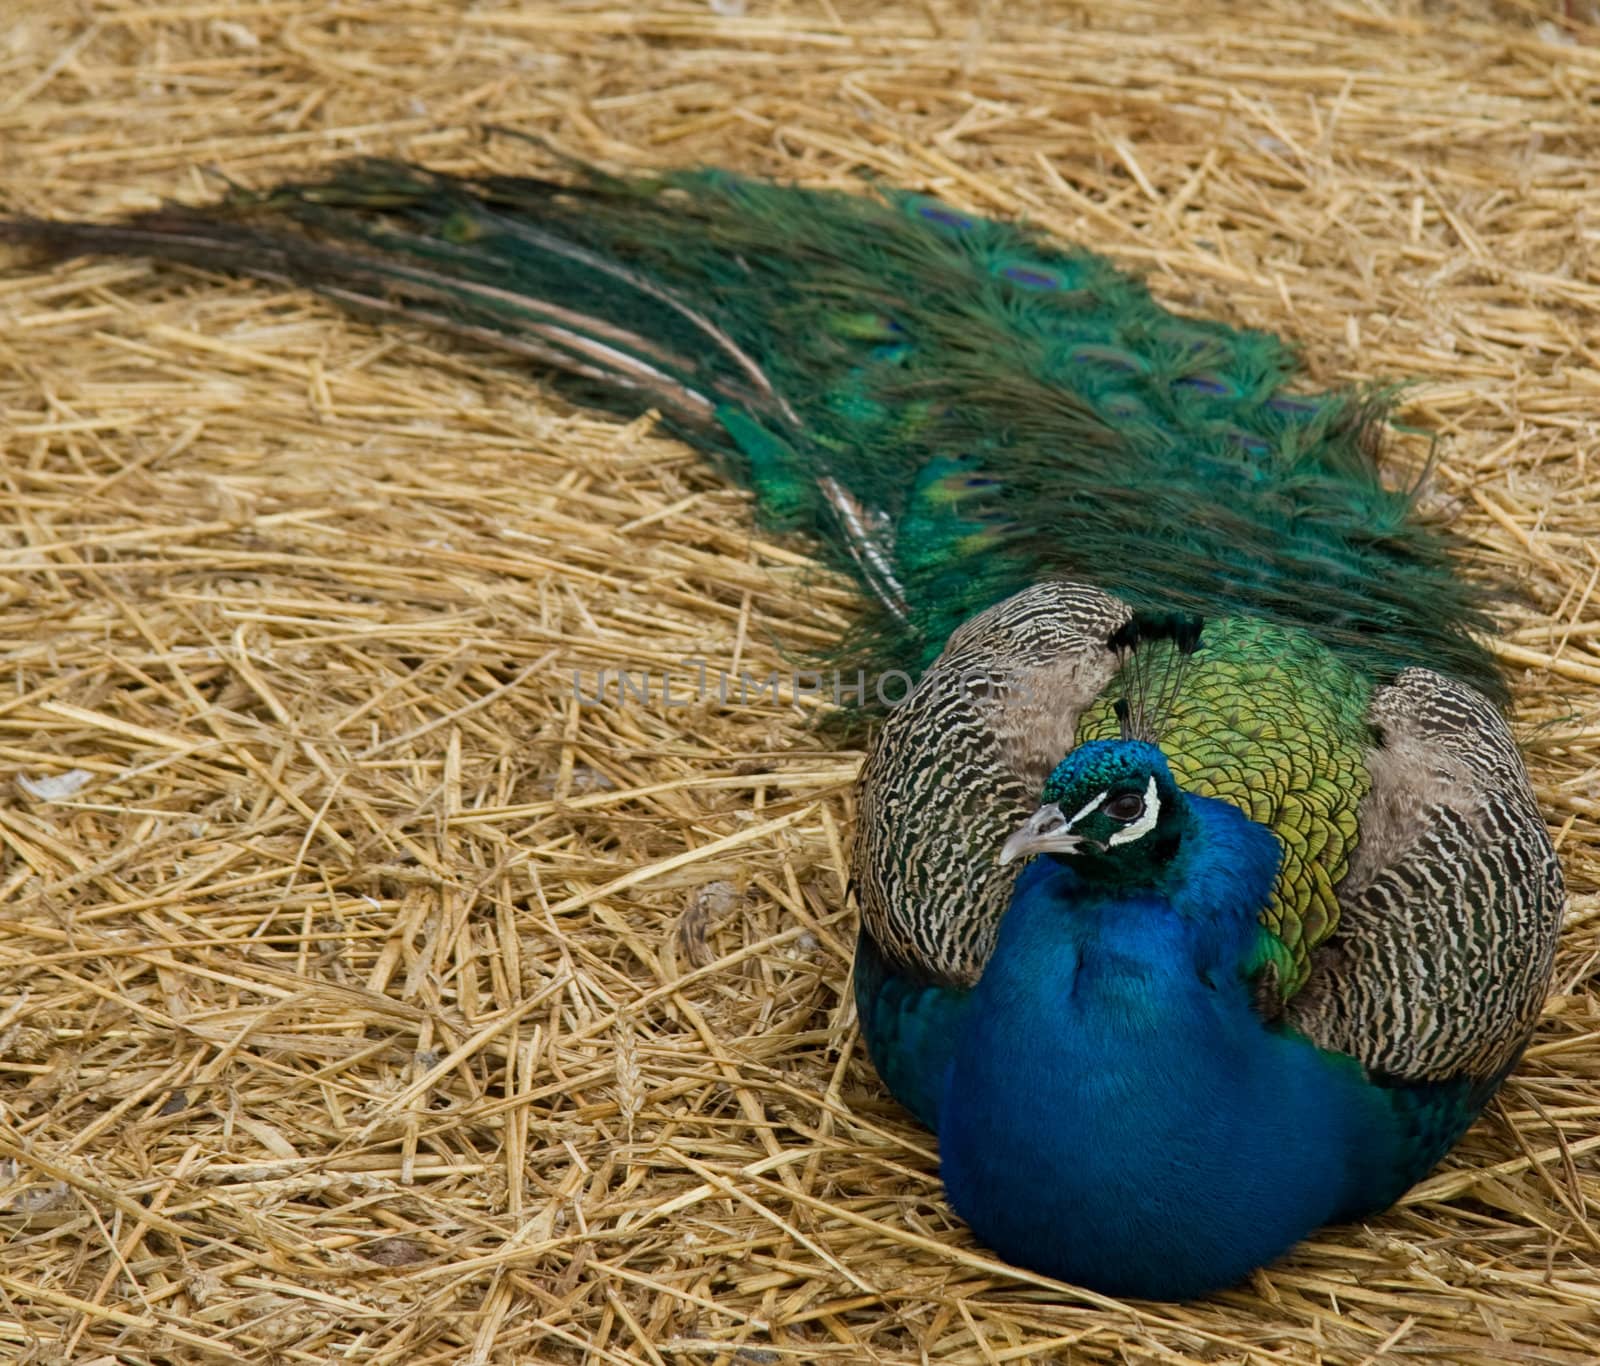 Peacock by hildurbjorg